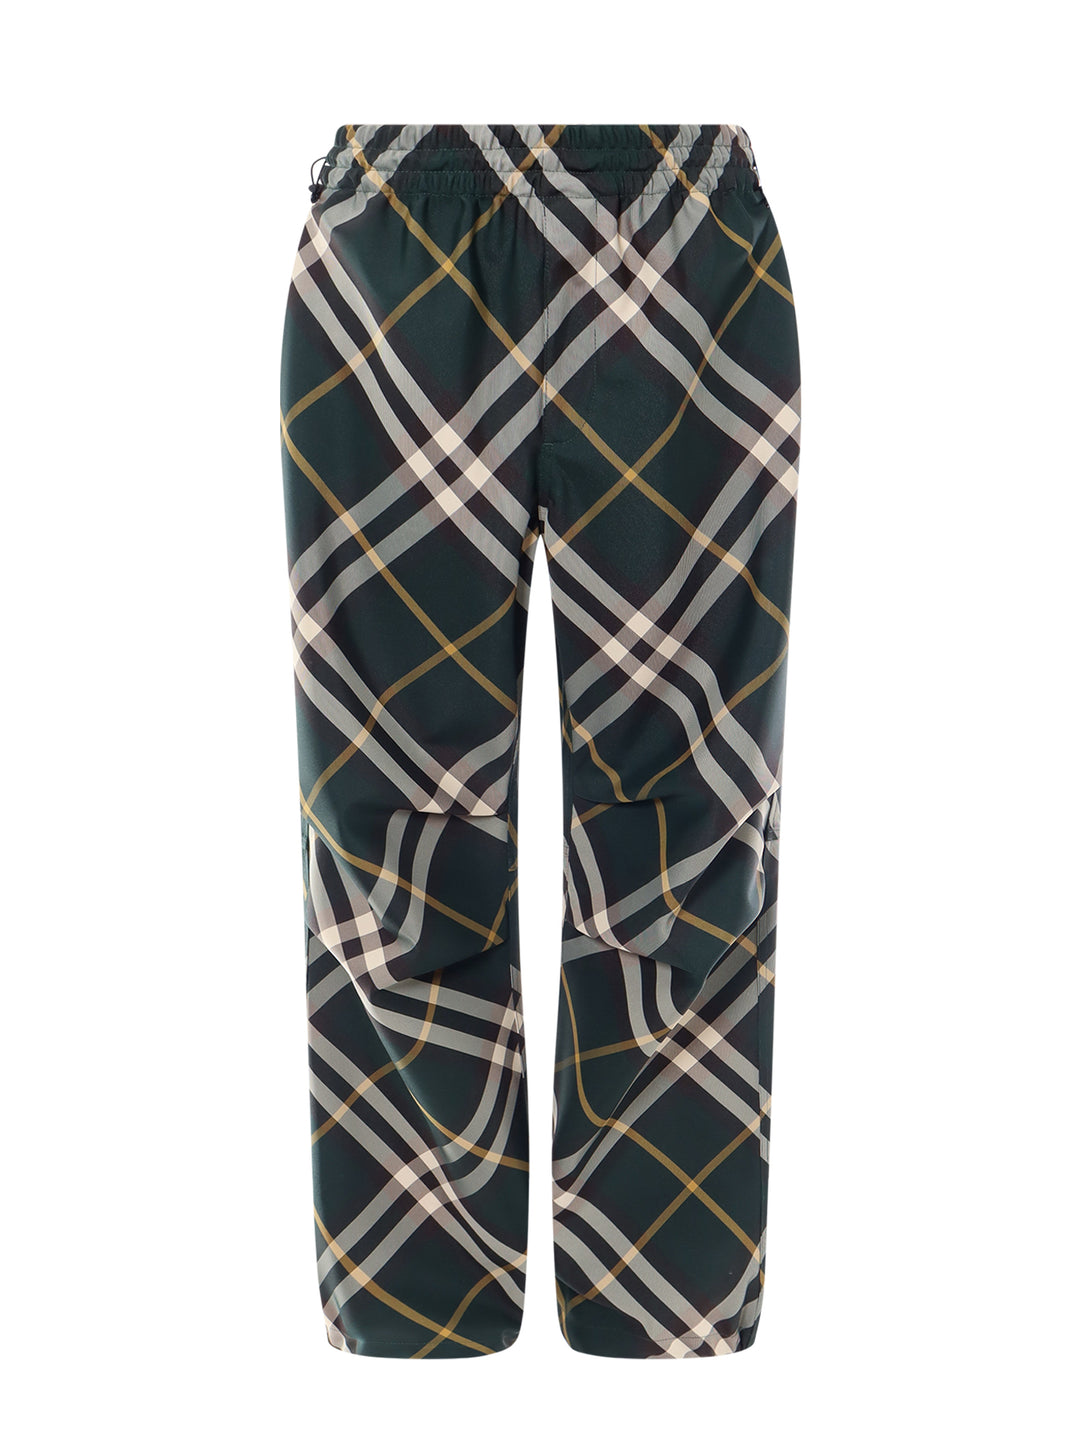 Pantalone in nylon con stampa Burberry Check